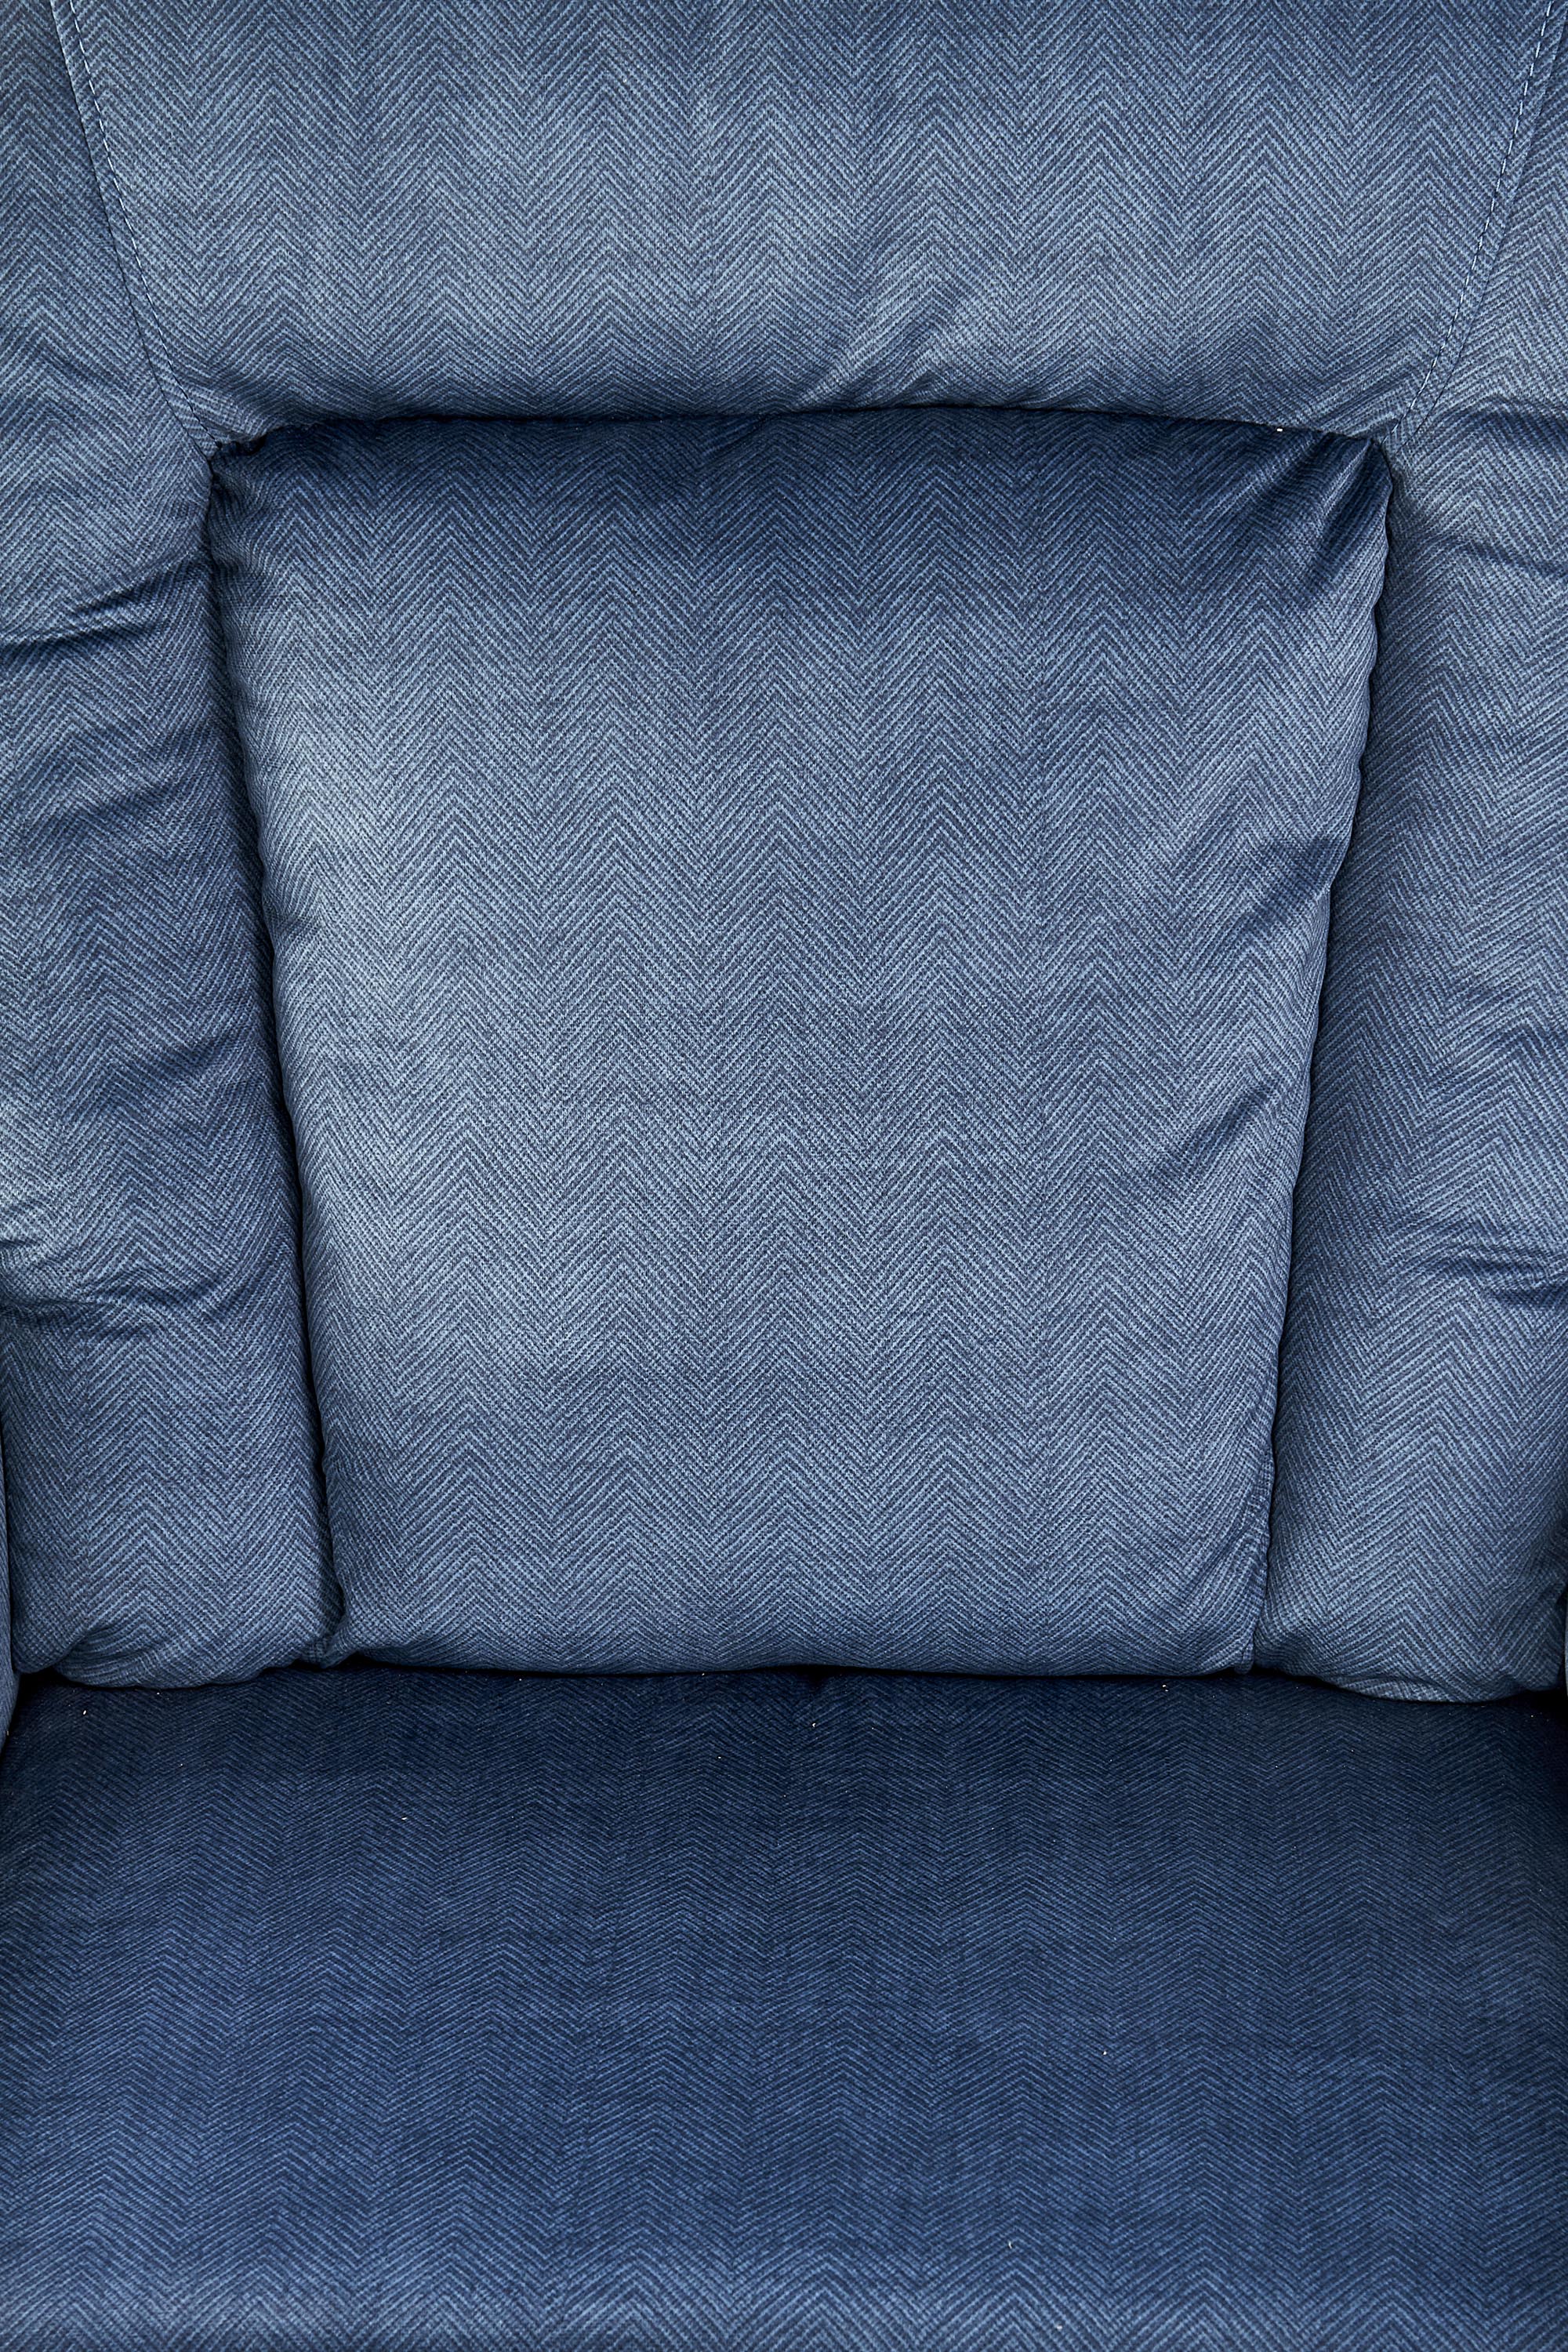 BARD fotel wypoczynkowy ciemny niebieski bard fotel wypoczynkowy ciemny niebieski